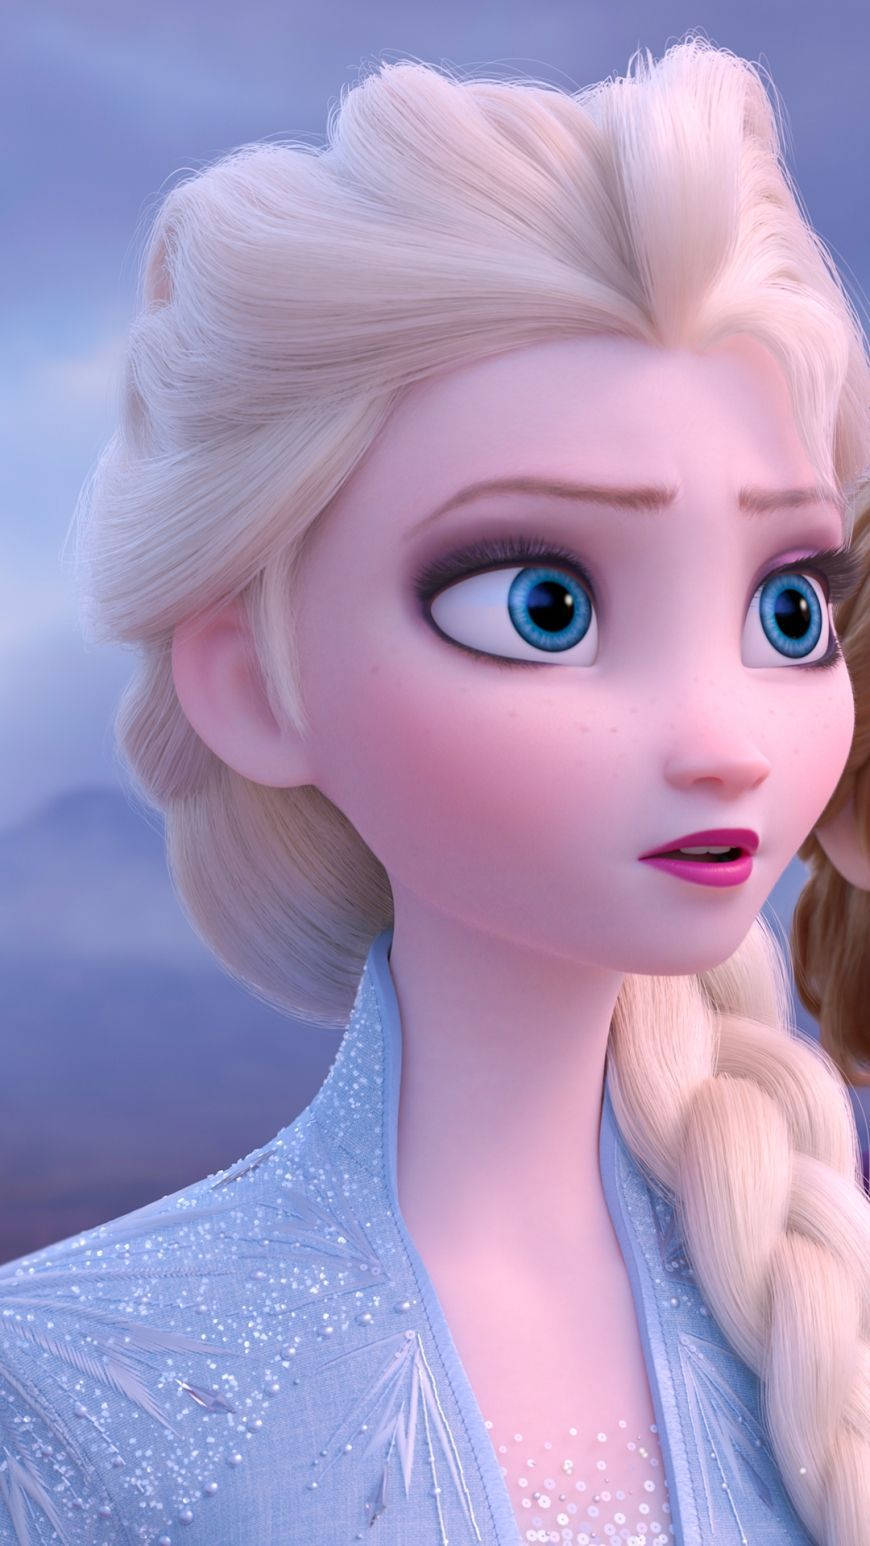 Queen Elsa of Arendelle ruling over the kingdom in Frozen 2 Wallpaper